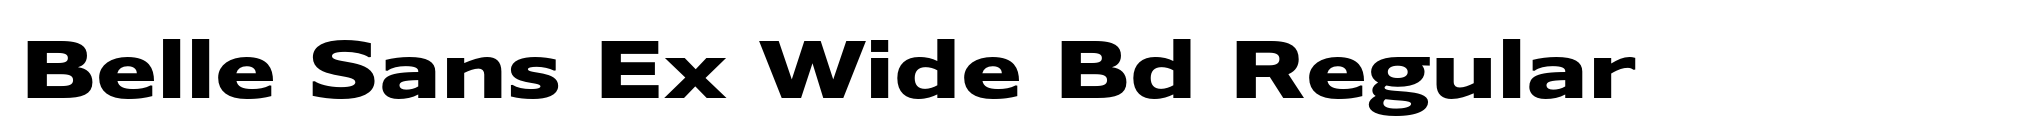 Belle Sans Ex Wide Bd Regular image